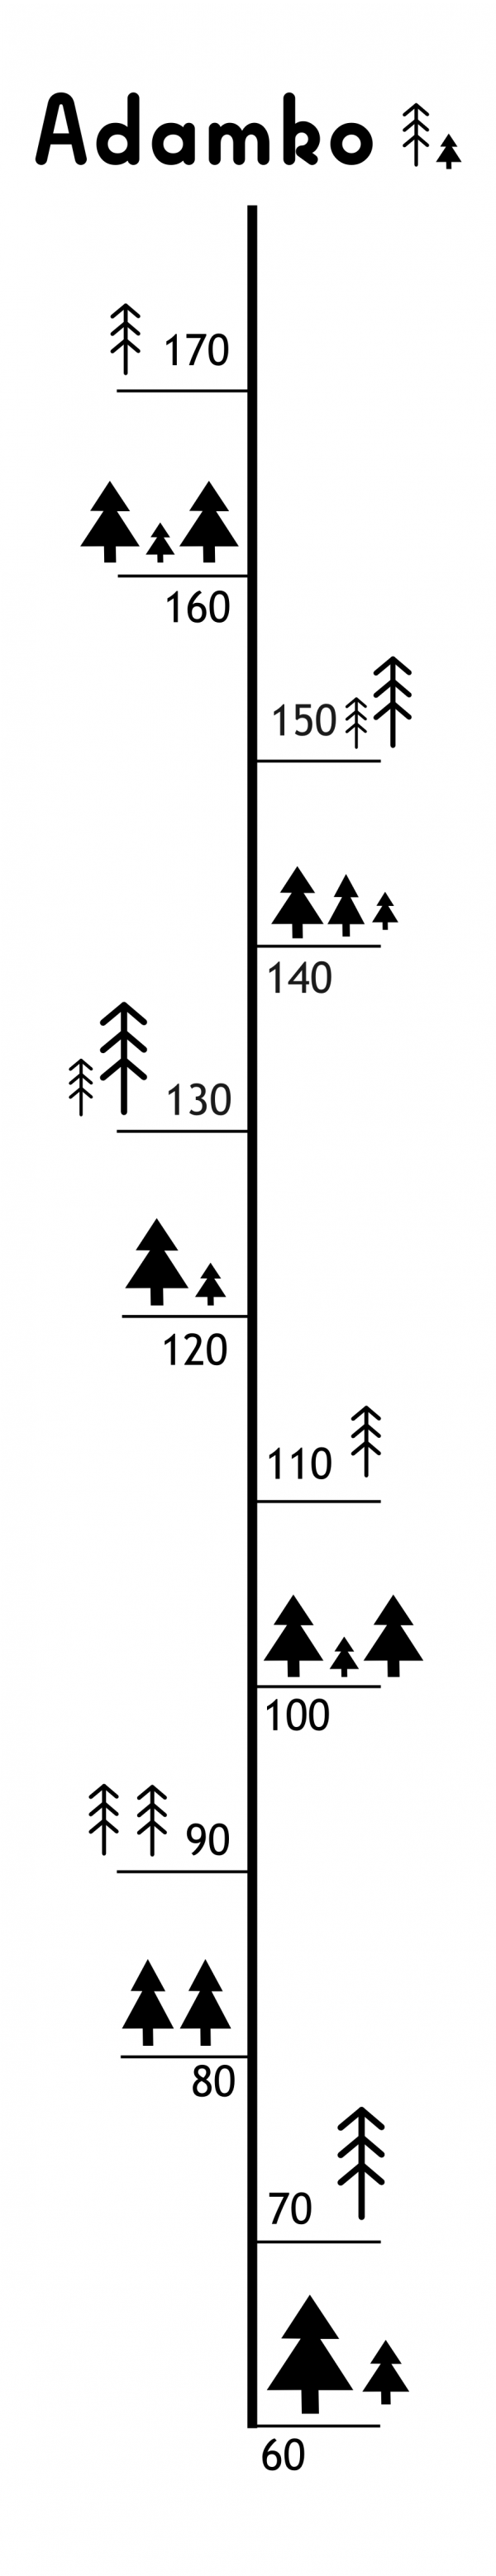 meter-cierny-stromceky1